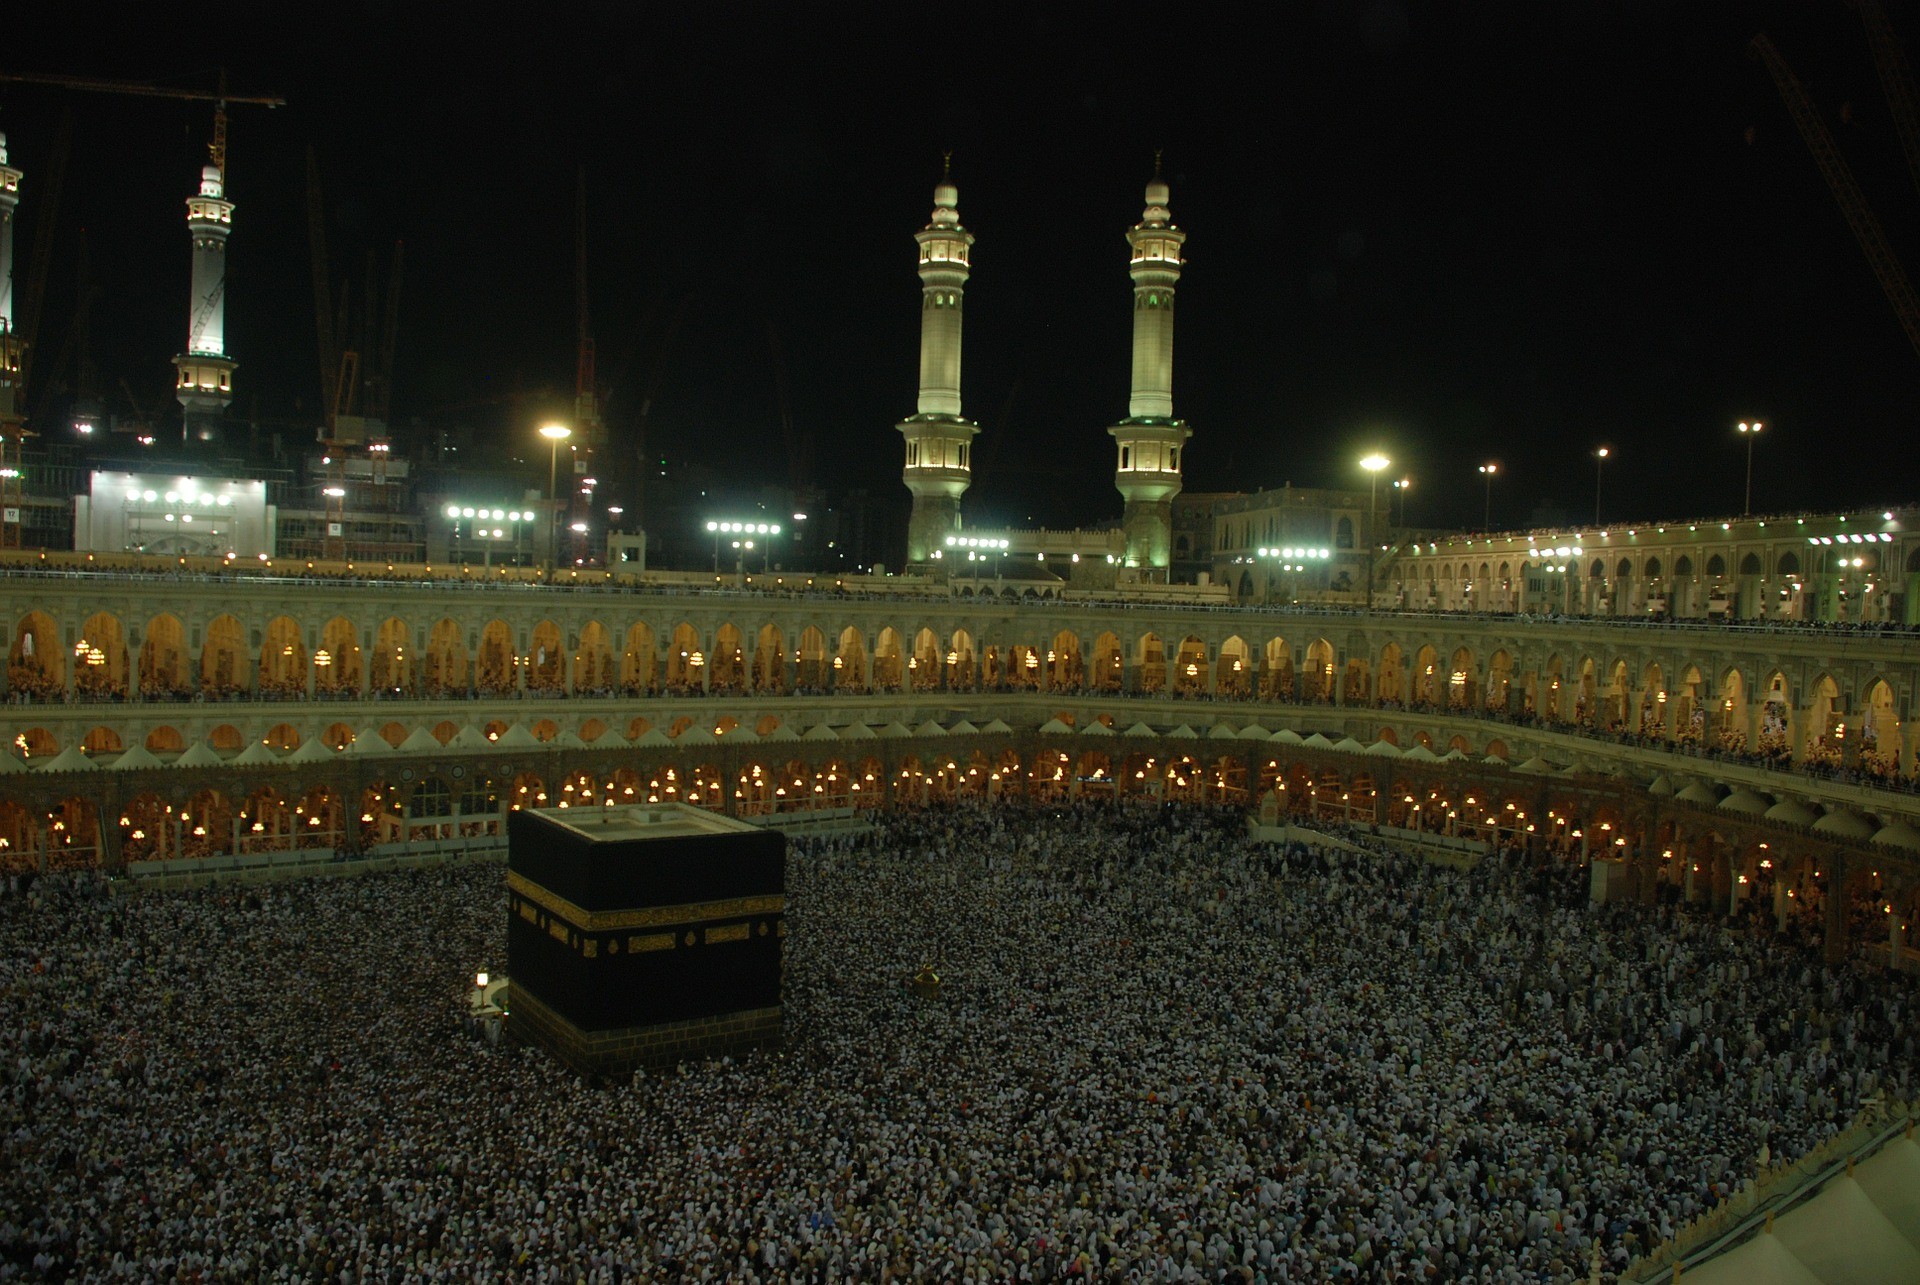 Fiéis em peregrinação na cidade de Meca, na Arábia Saudita (Foto: Pixabay)